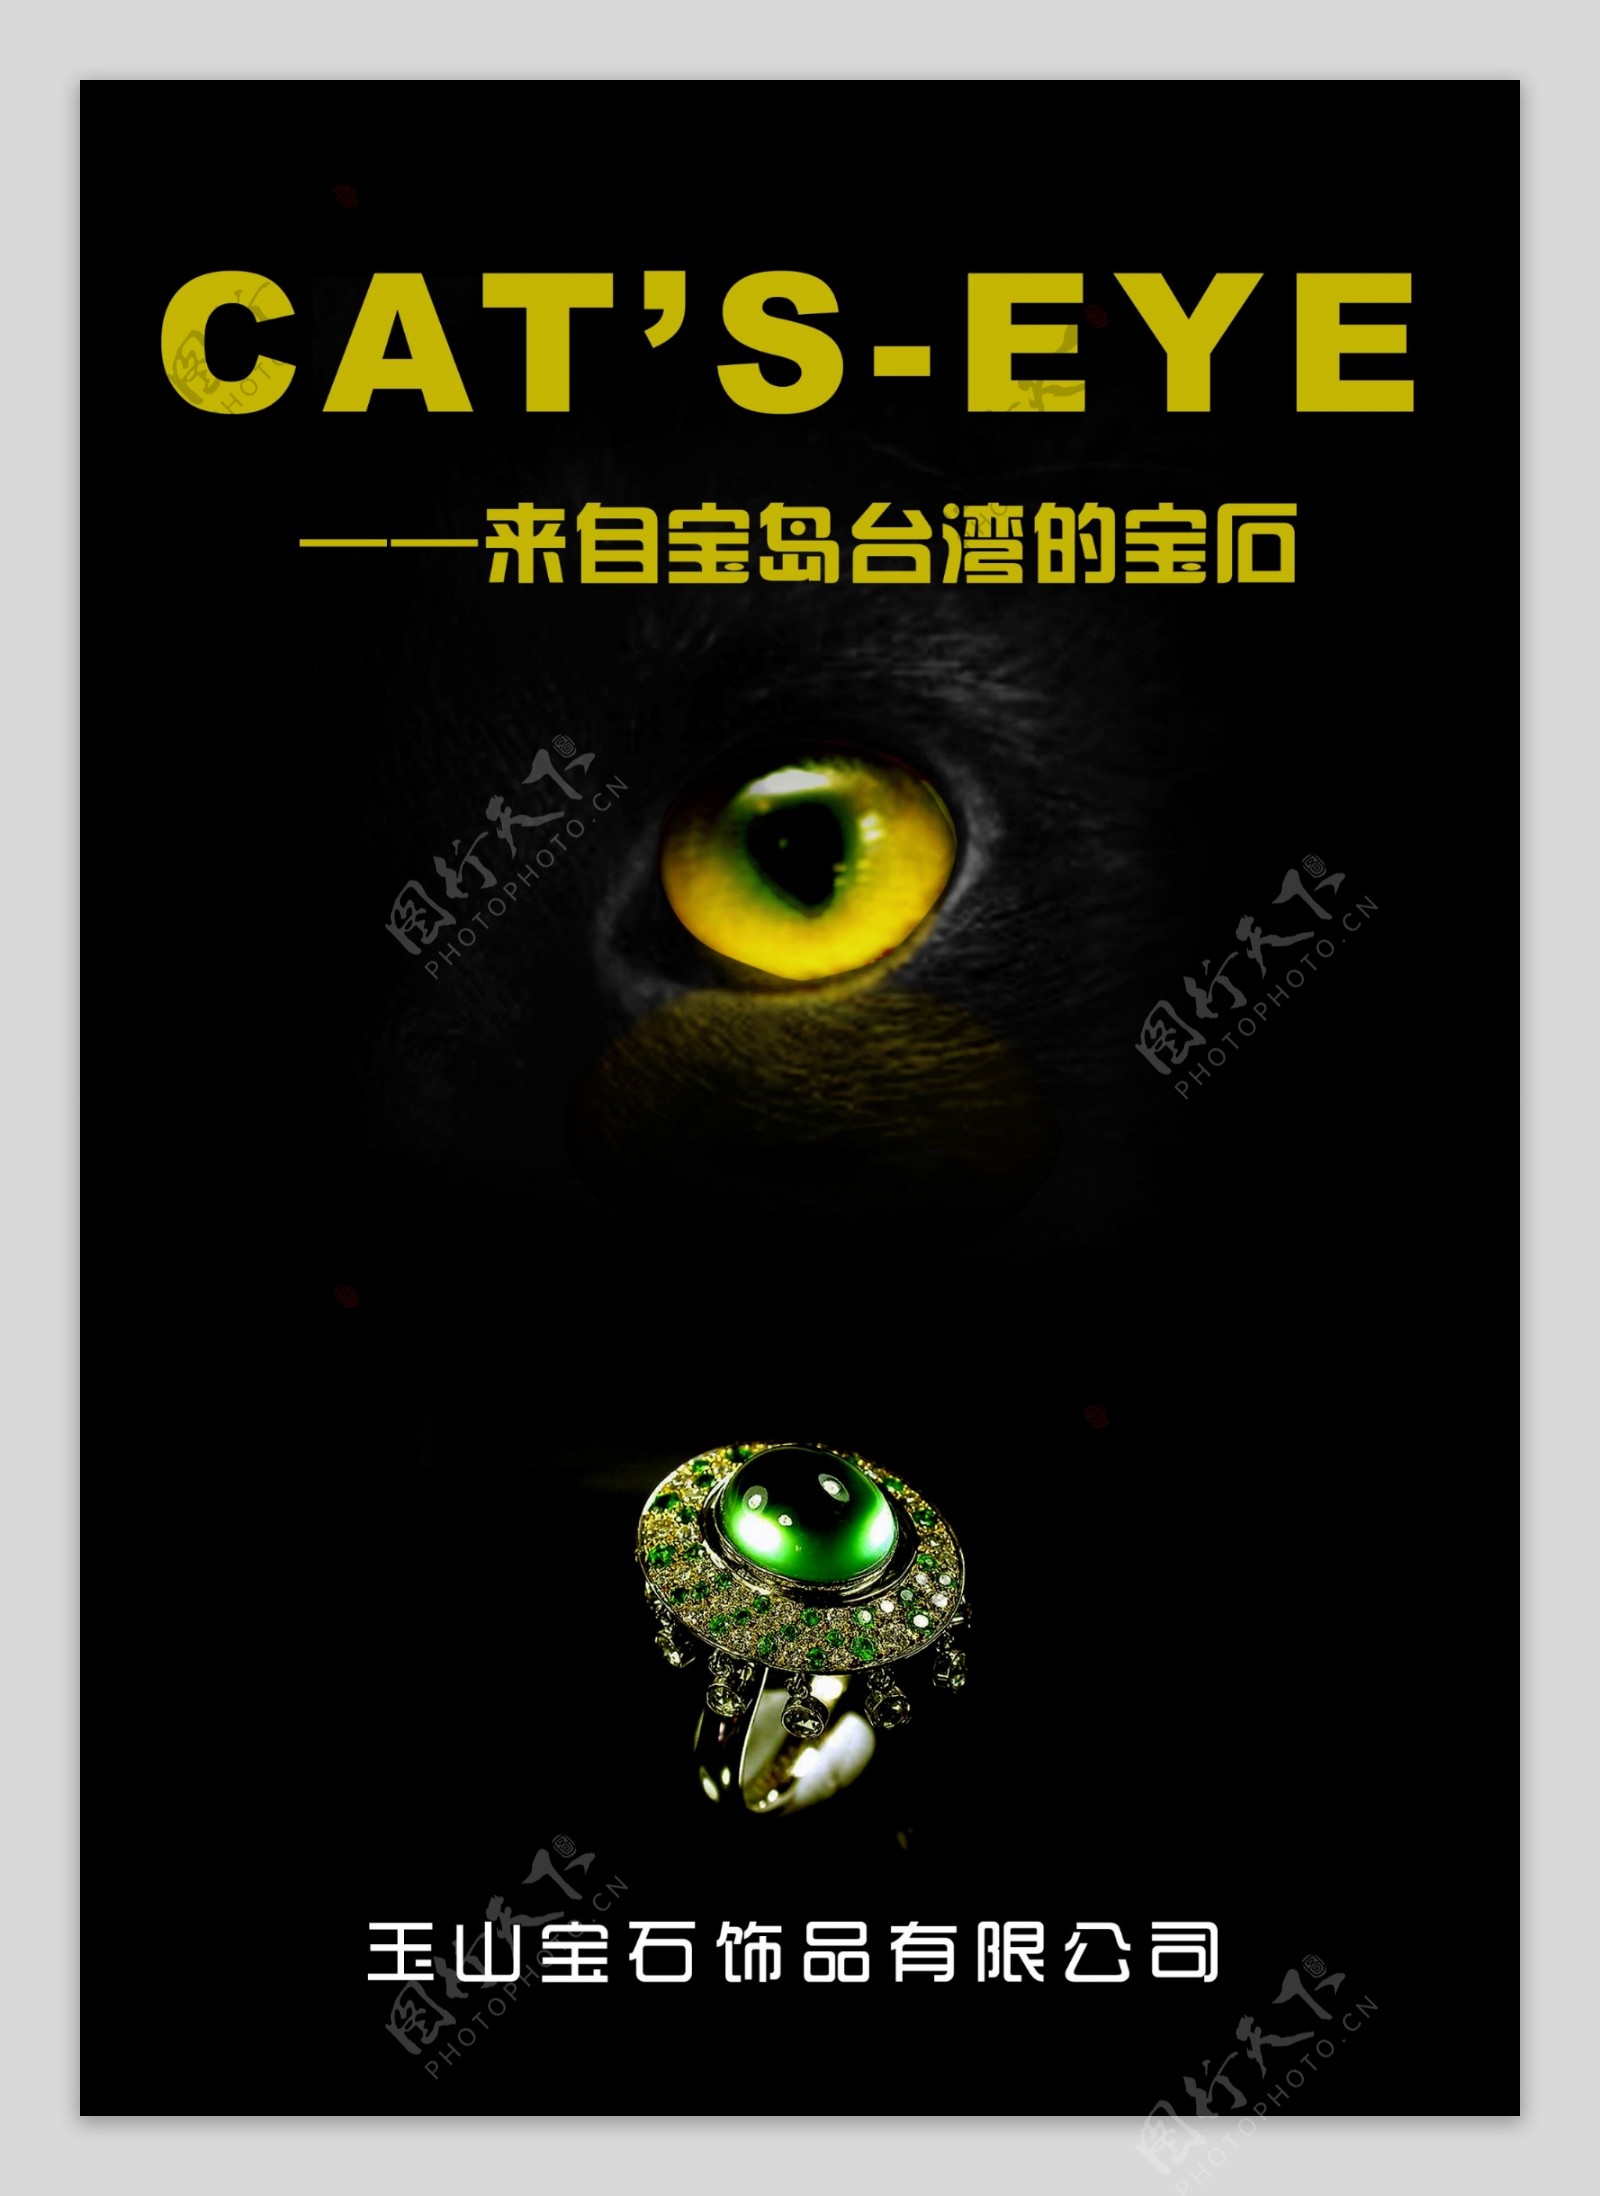 猫儿眼宝石广告图片